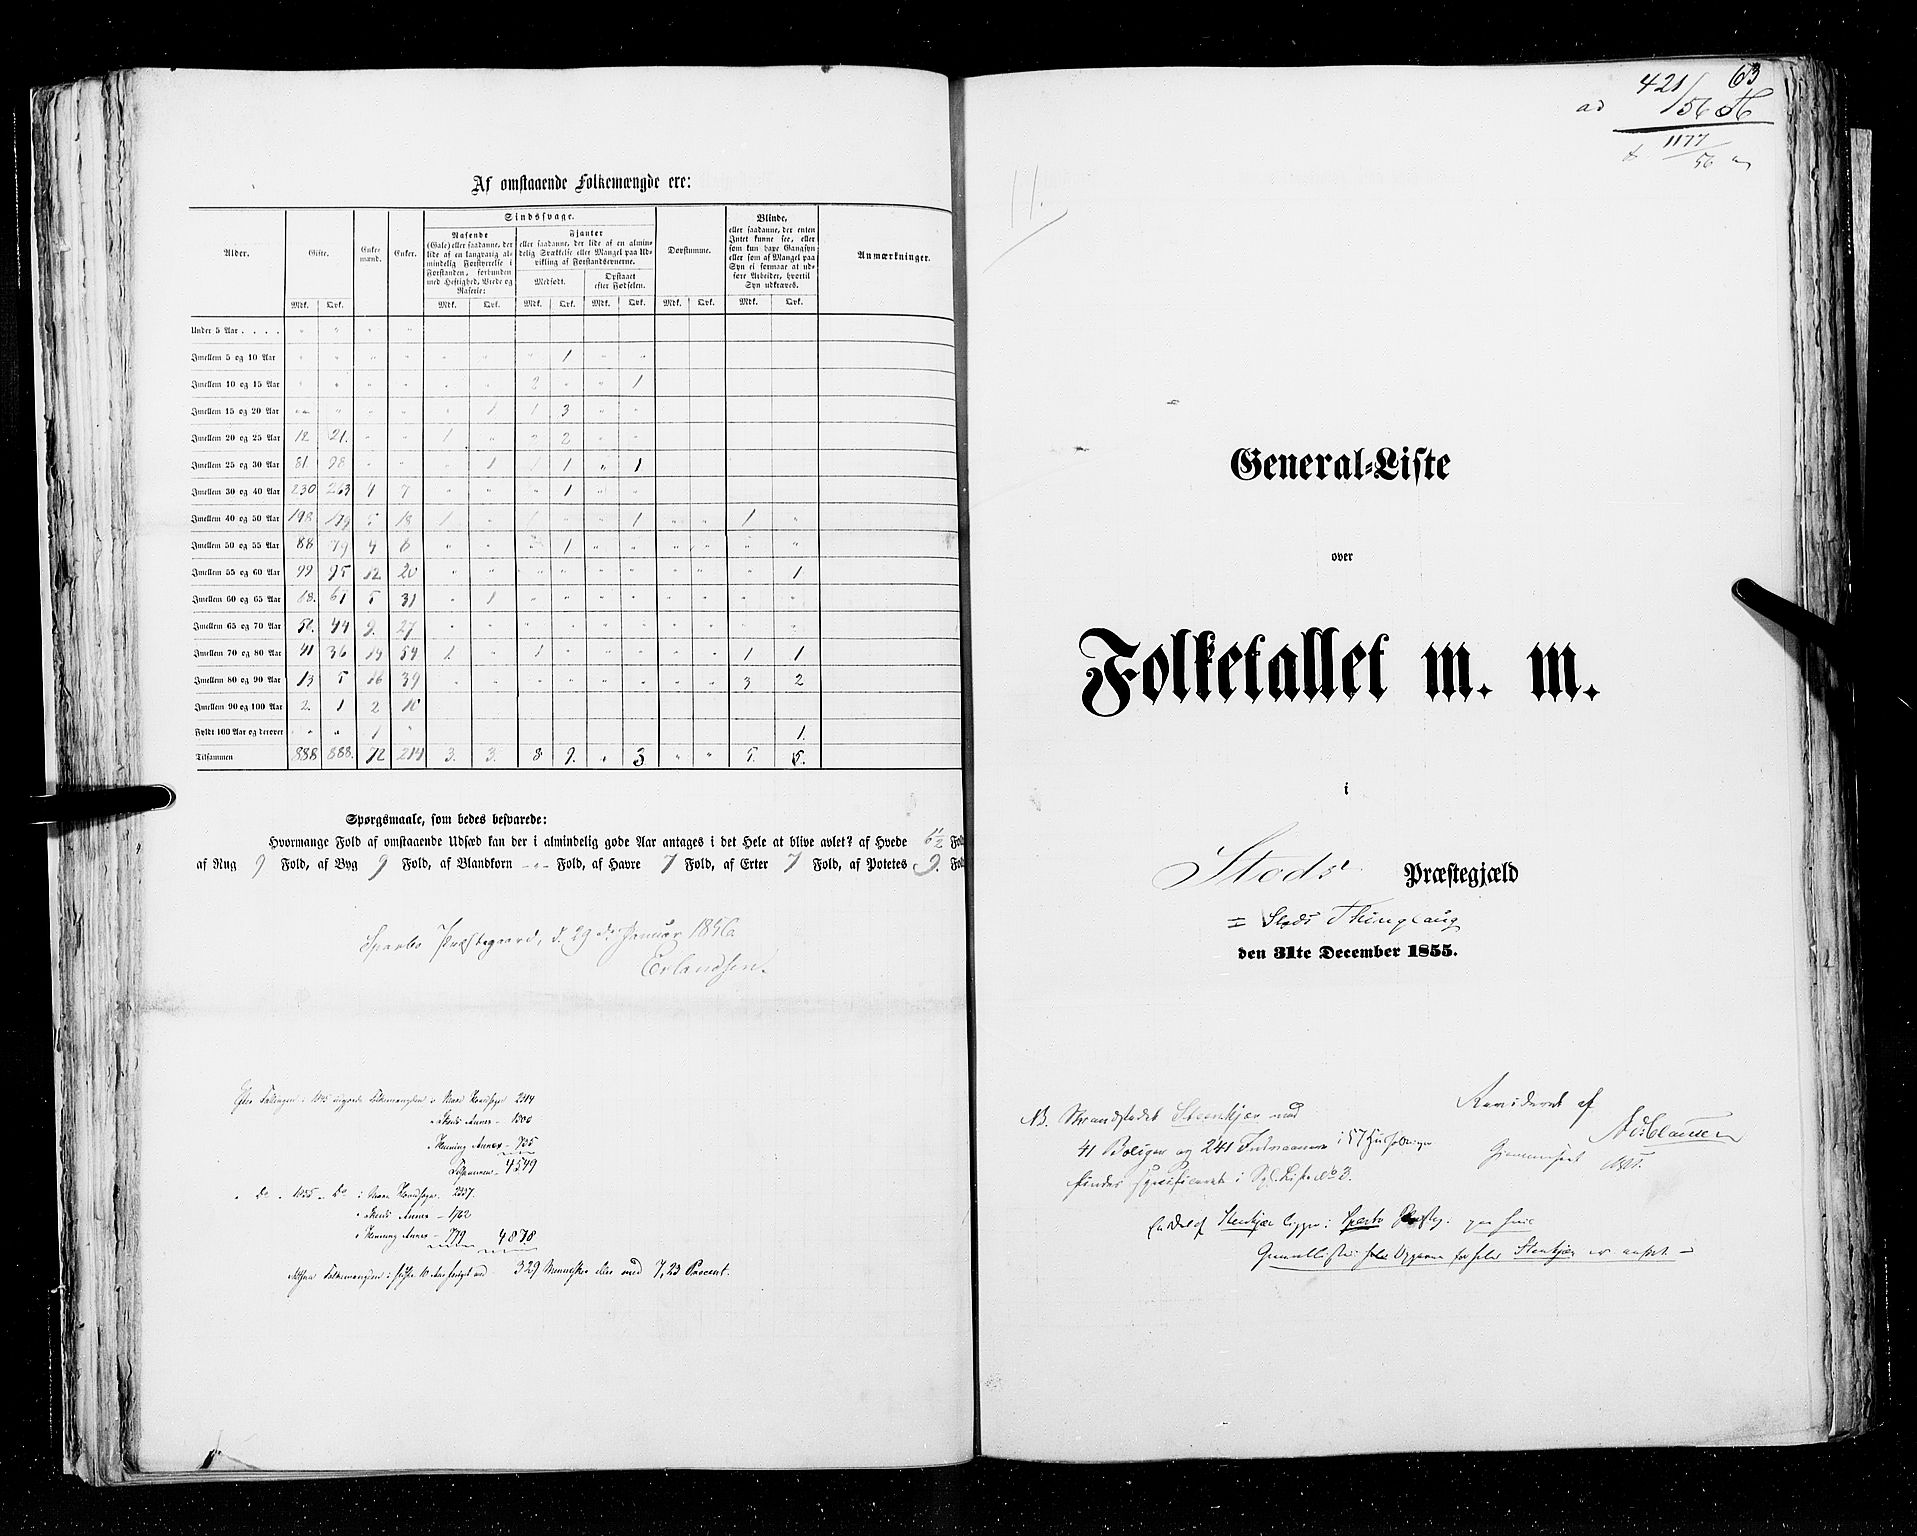 RA, Folketellingen 1855, bind 6A: Nordre Trondhjem amt og Nordland amt, 1855, s. 63